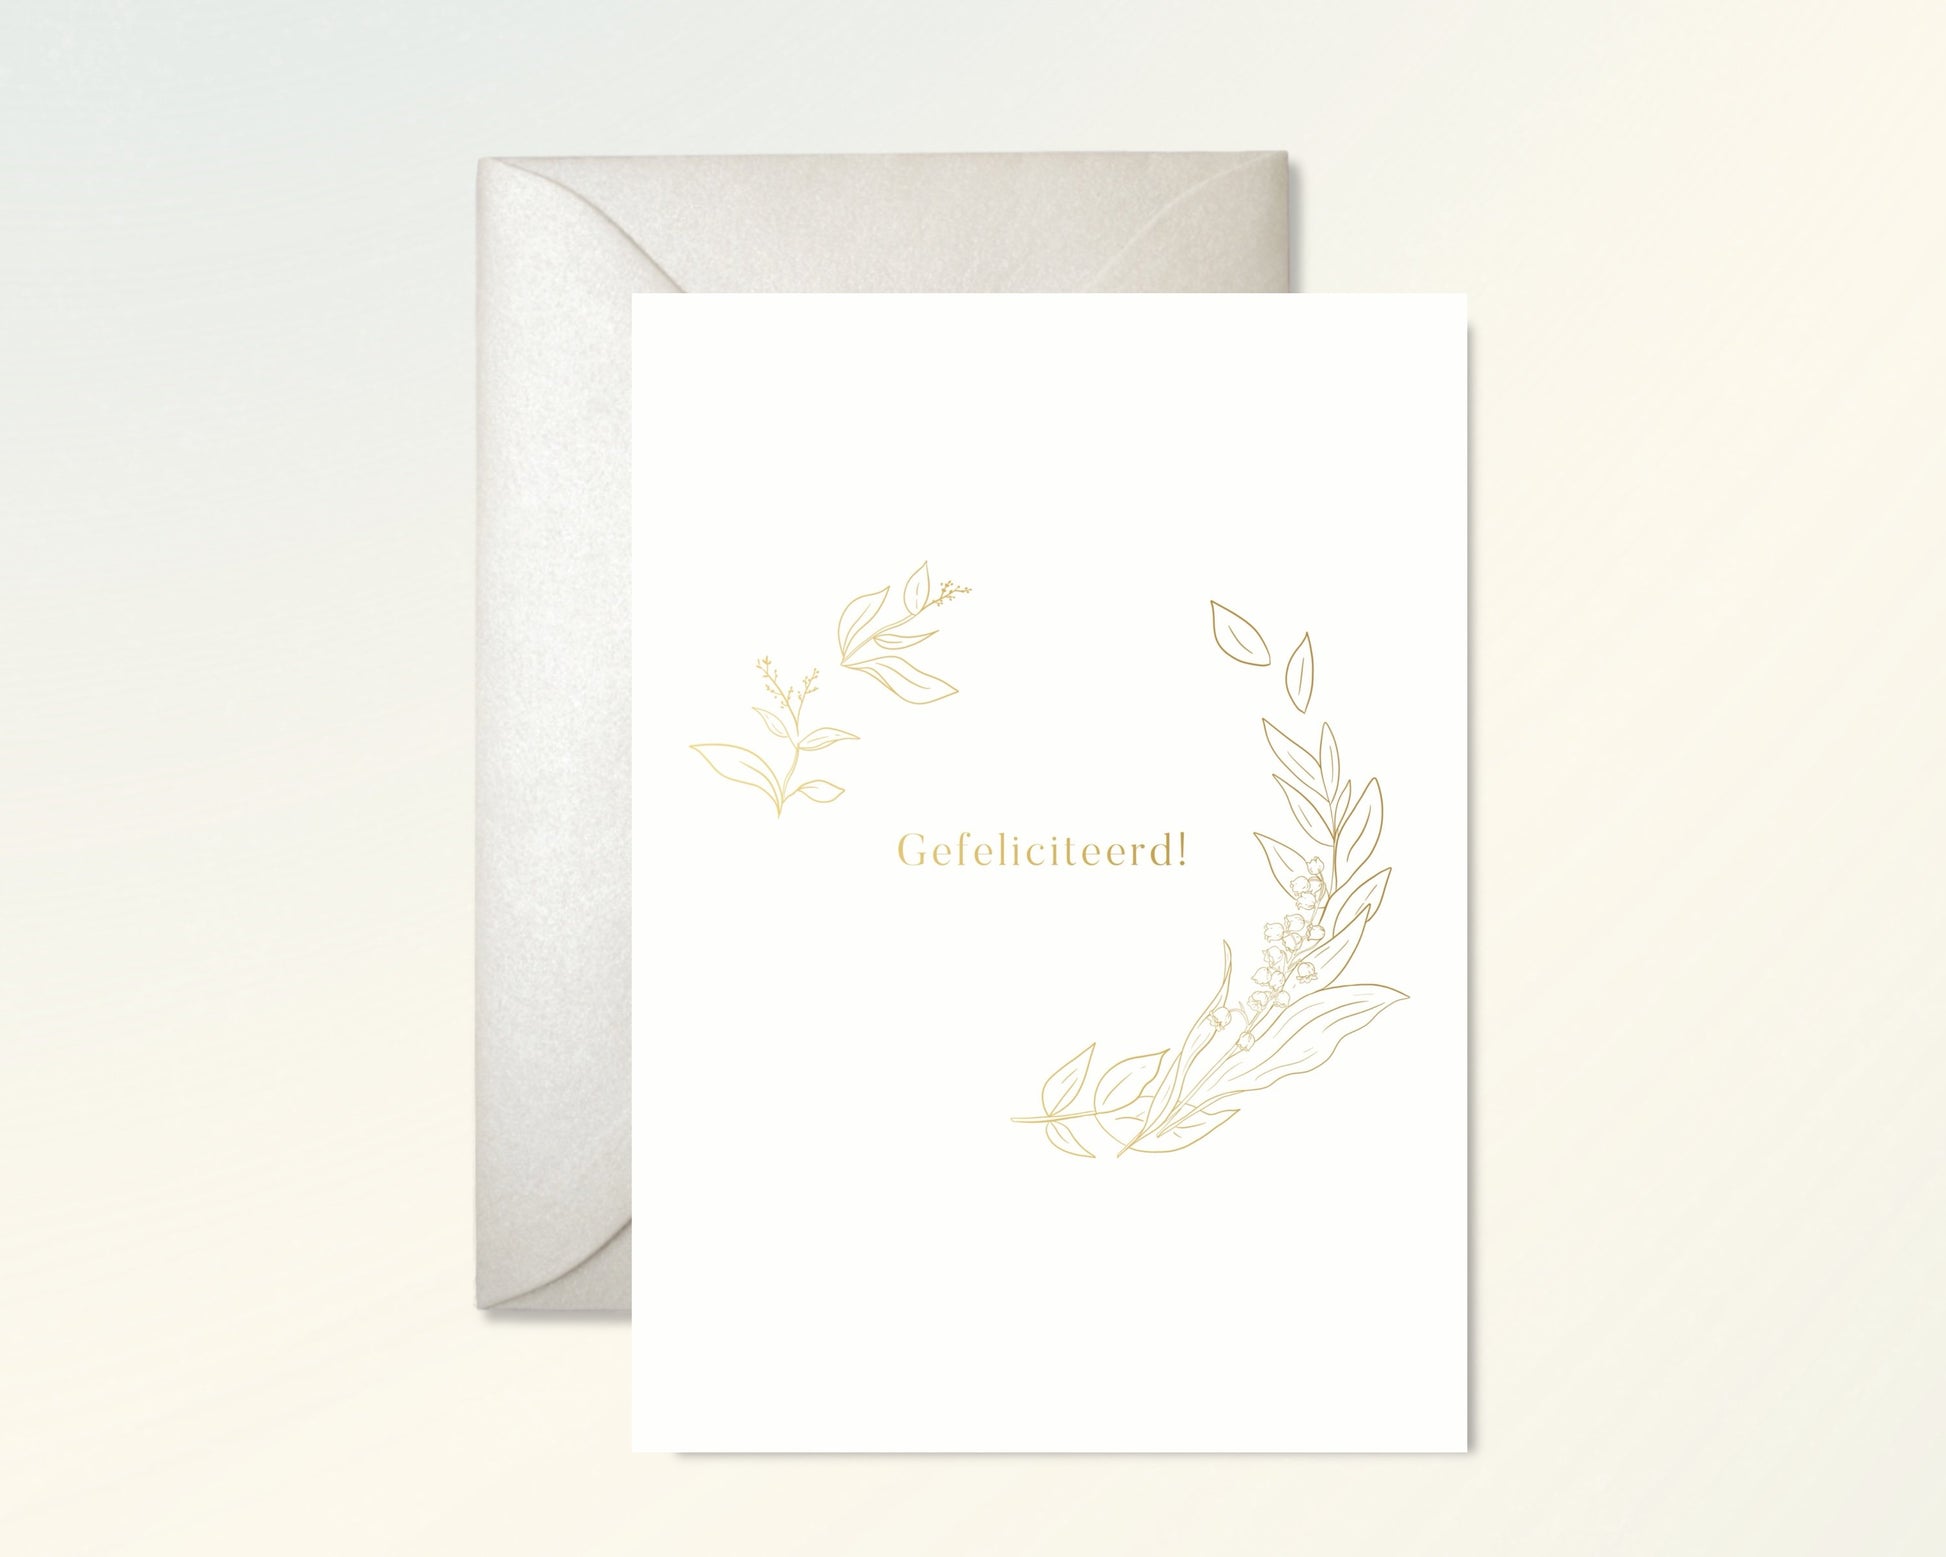 Gefeliciteerd! Greeting Cards - Honeypress Design